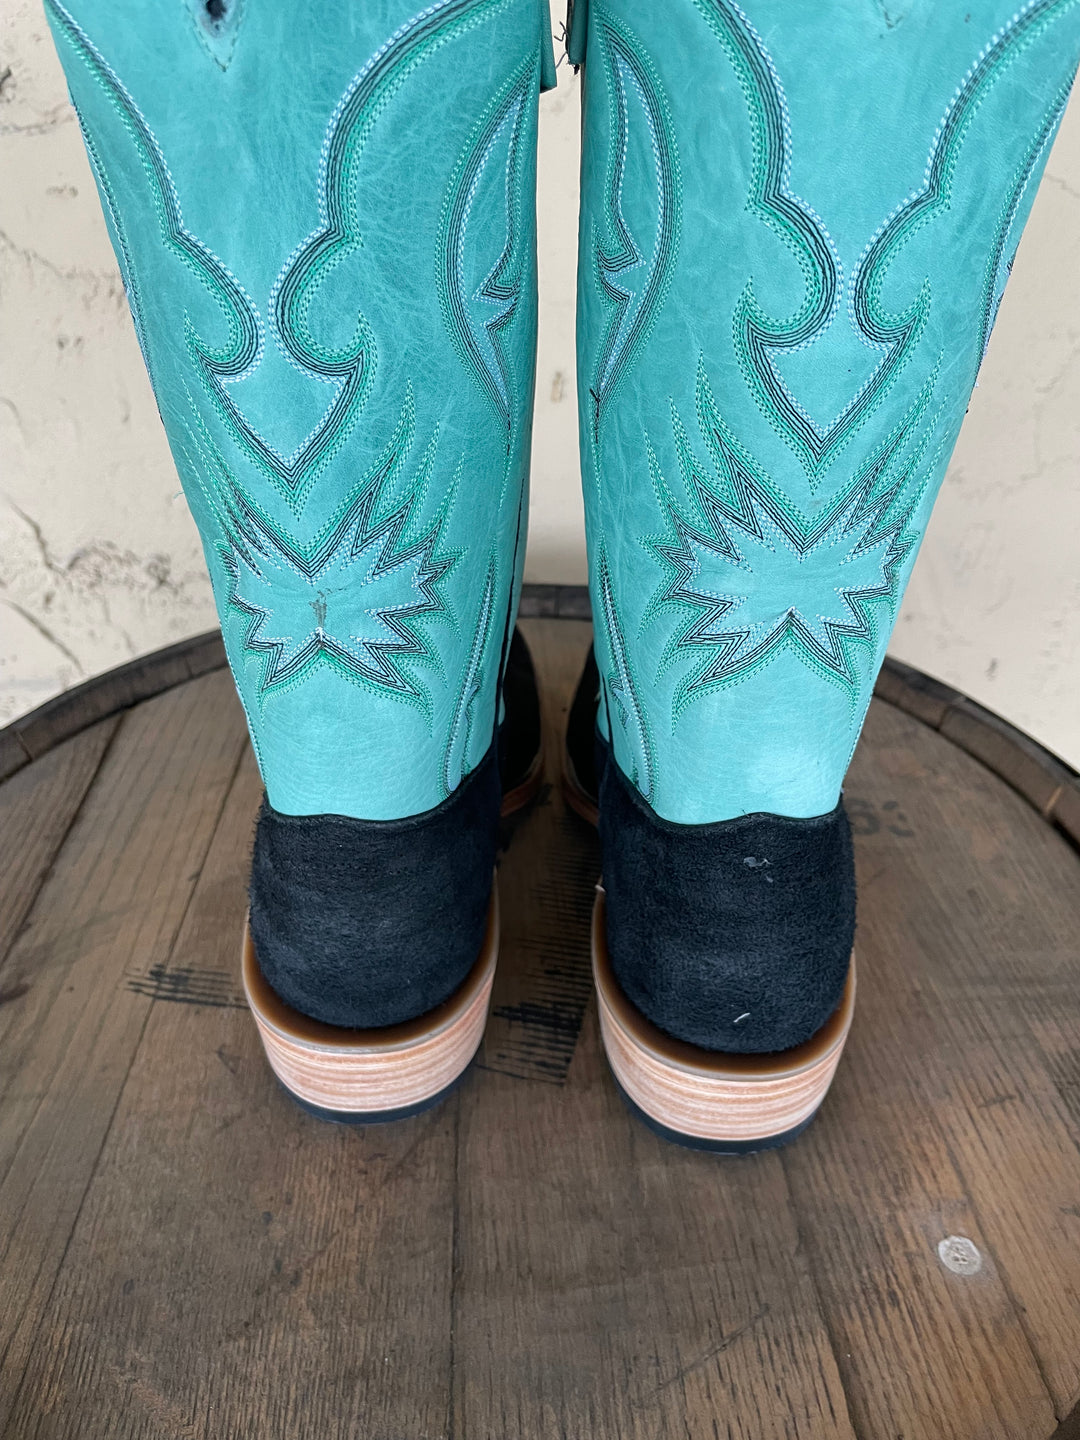 Olathe Men's Exclusive Spur Rest Western Cowboy Boots